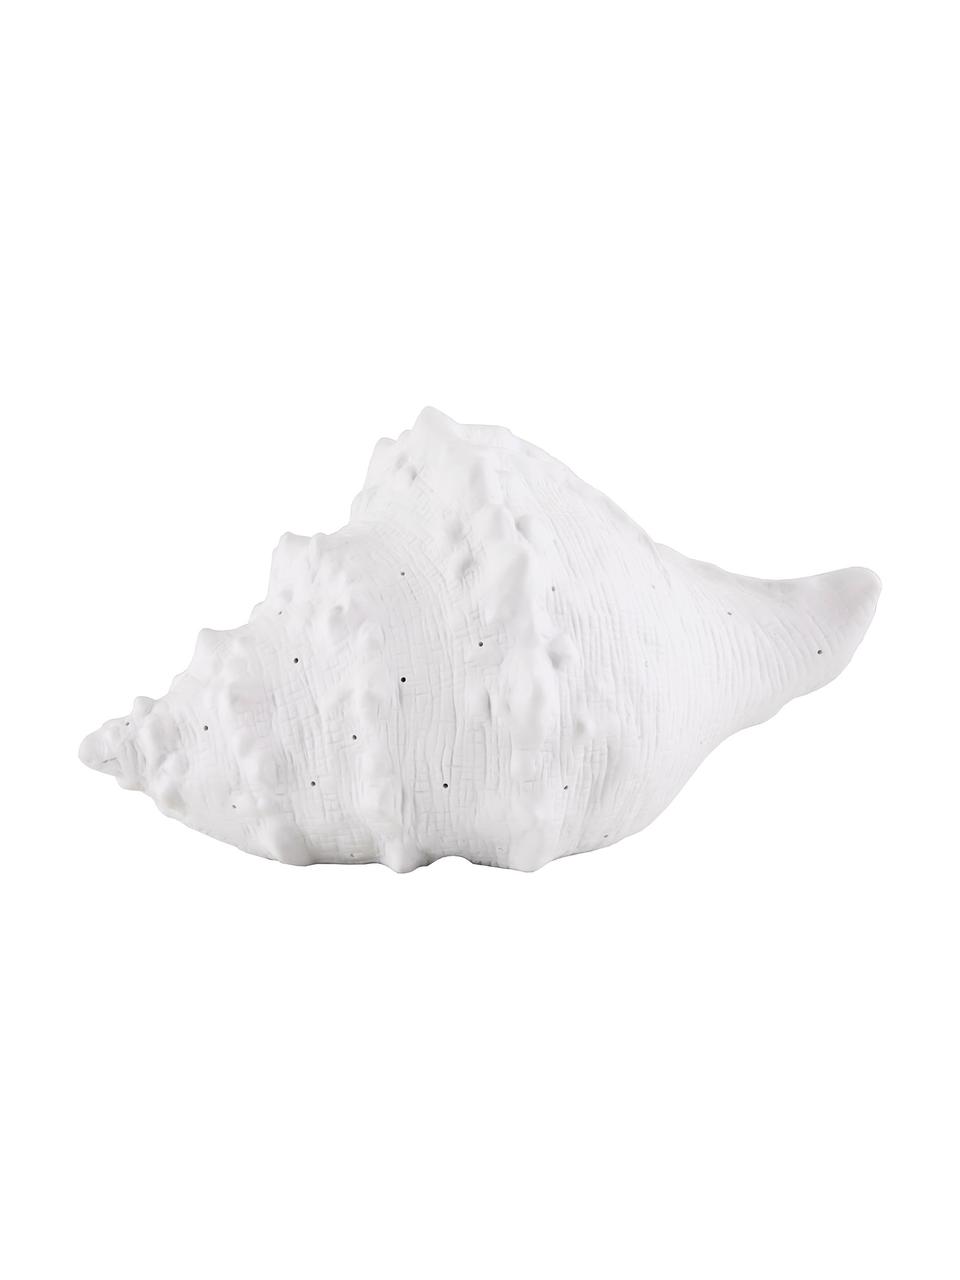 Lampa stołowa z ceramiki Seashell, Biały, S 30 x W 15 cm